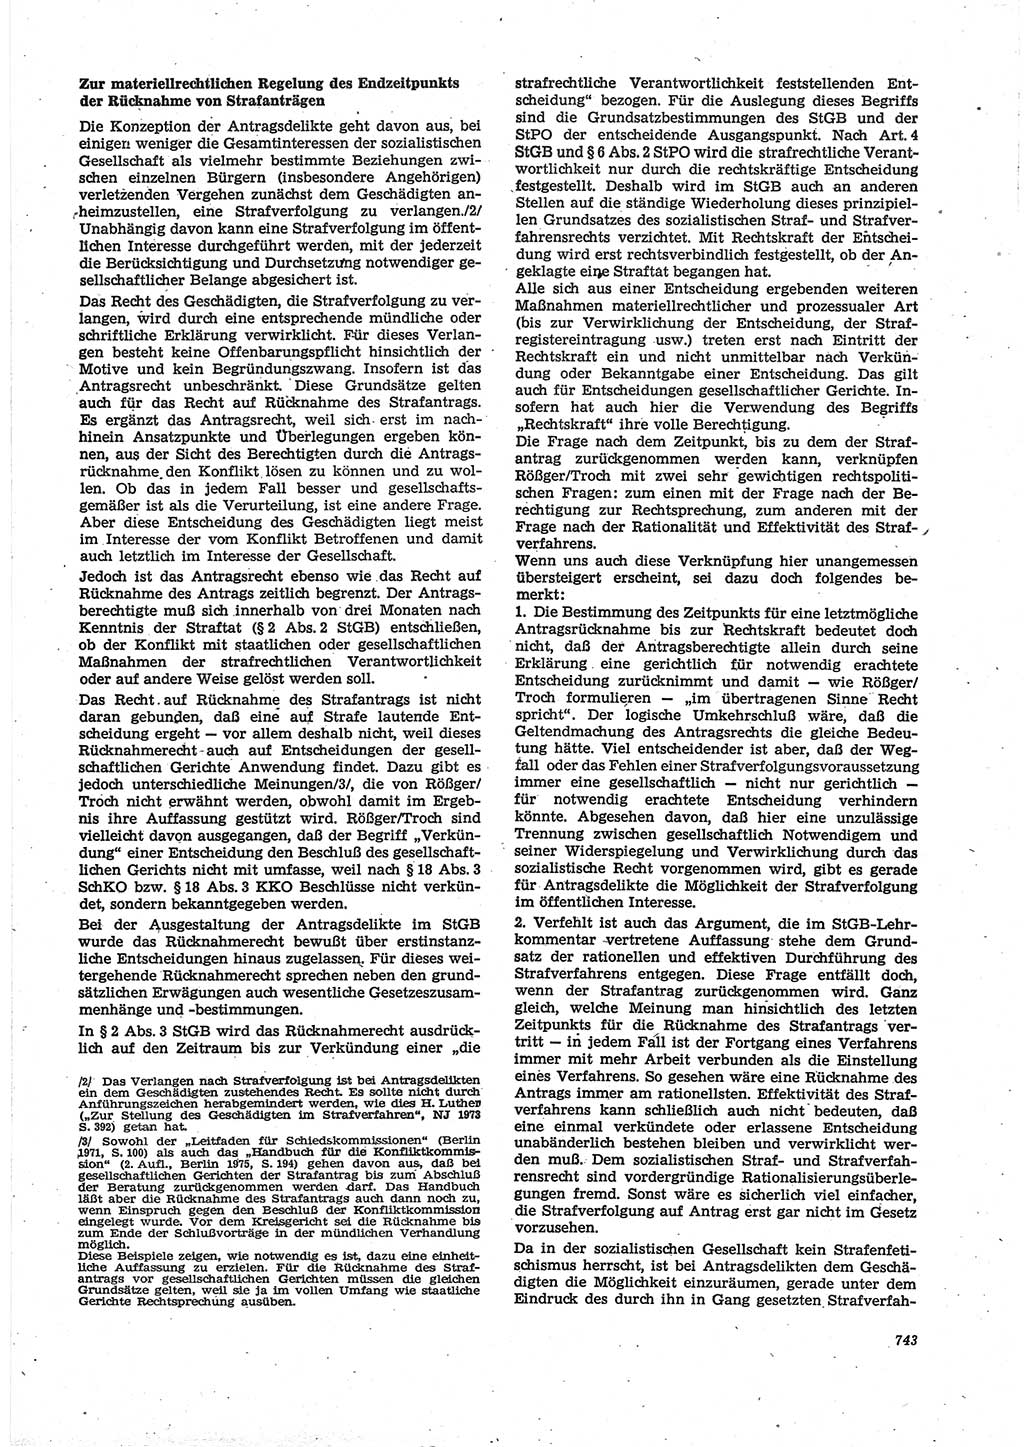 Neue Justiz (NJ), Zeitschrift für Recht und Rechtswissenschaft [Deutsche Demokratische Republik (DDR)], 30. Jahrgang 1976, Seite 743 (NJ DDR 1976, S. 743)